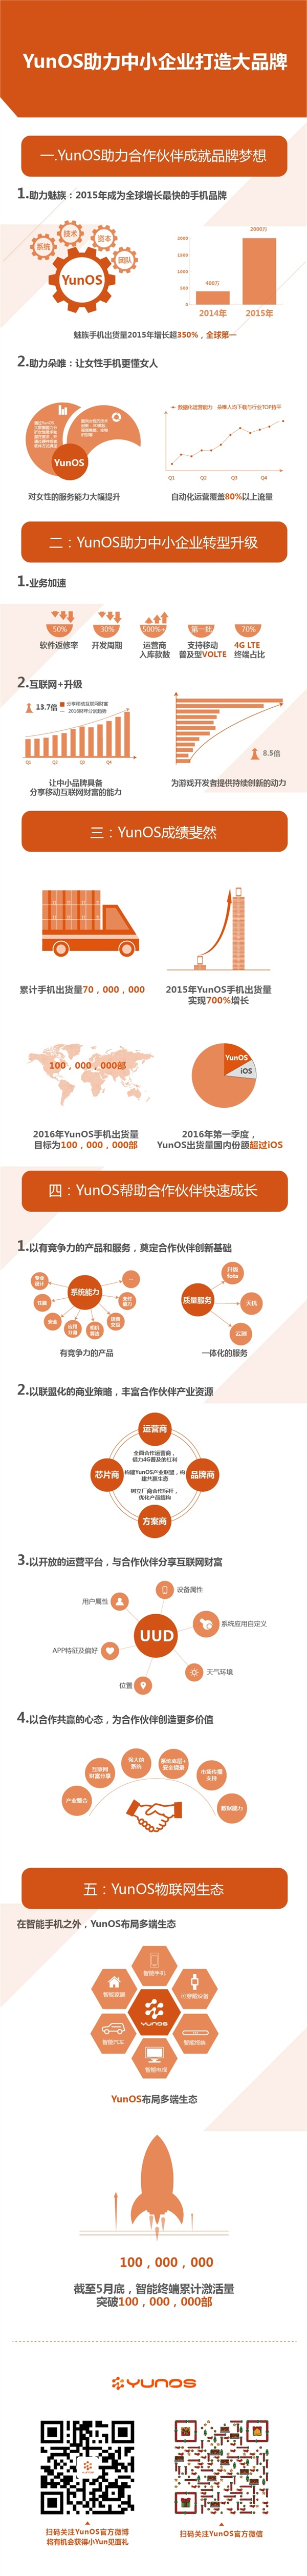 国内超iOS！YunOS手机要破1亿部：份额将达25%